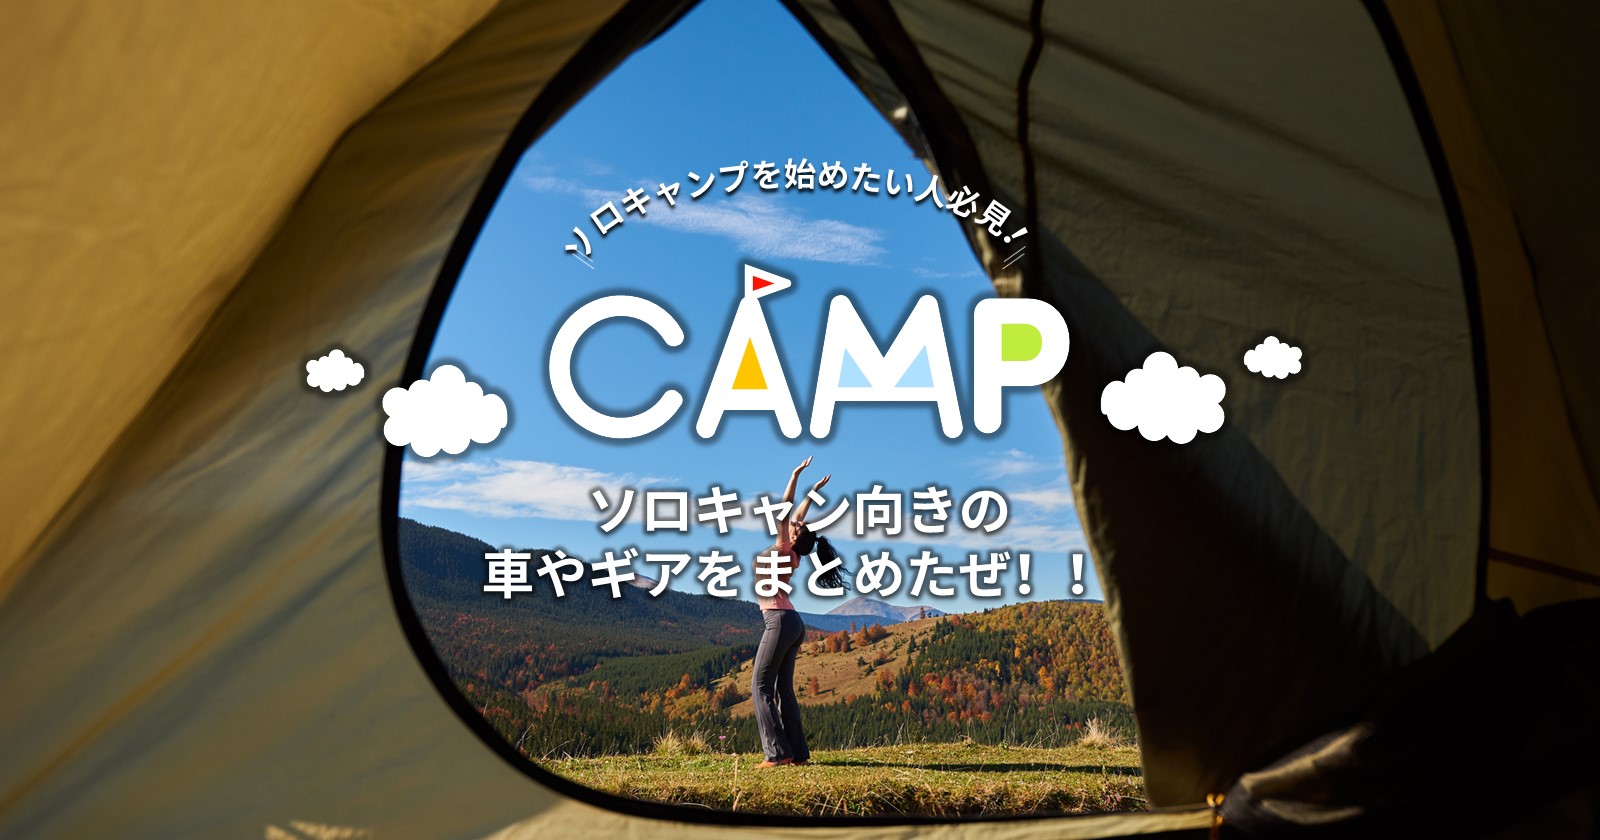 ソロキャンプを始めたい人必見 ソロキャン向きの車やギアをまとめたぜ Takibi タキビ キャンプ アウトドアの総合情報サイト